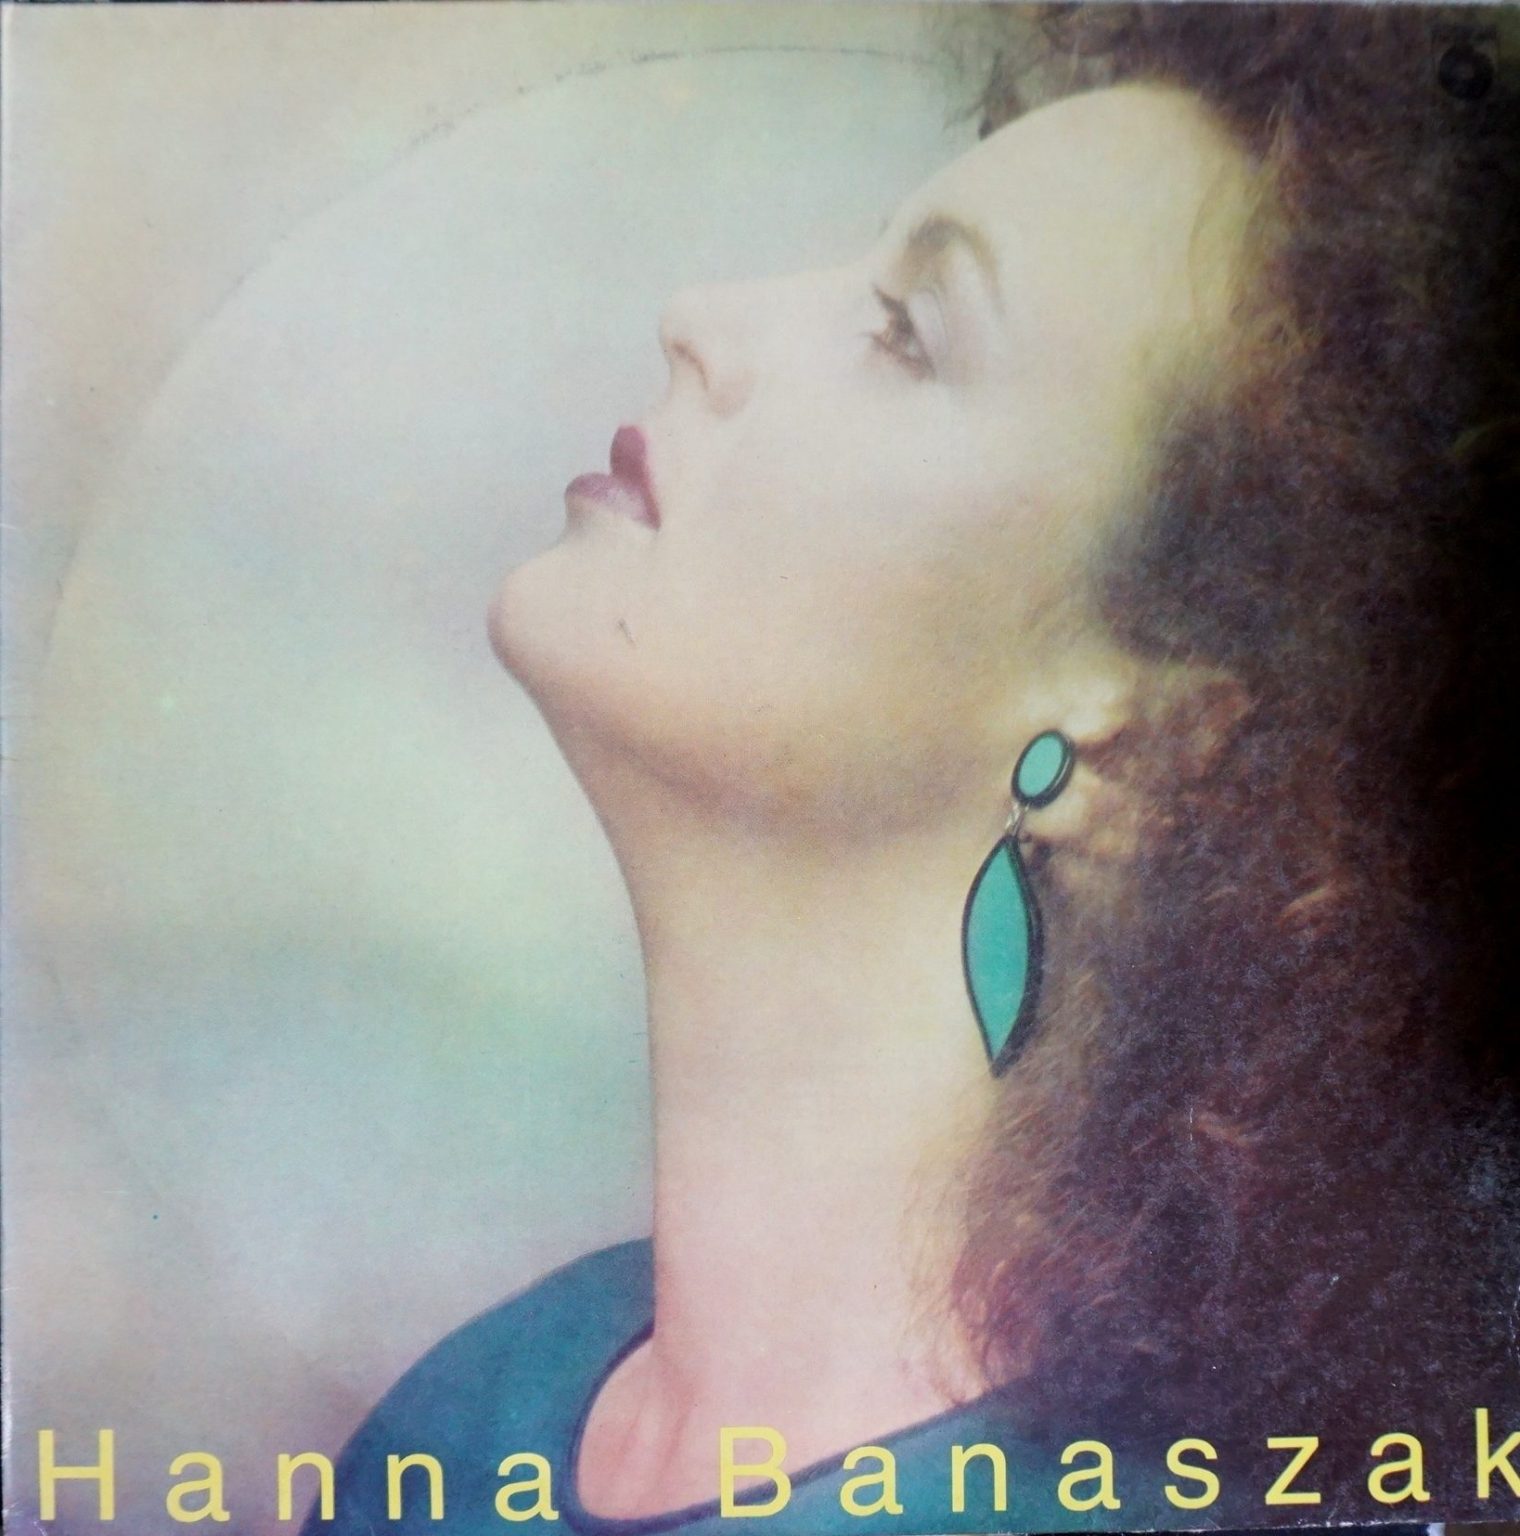 Hanna Banaszak – Hanna Banaszak [Vinyl LP] (VG/VG)